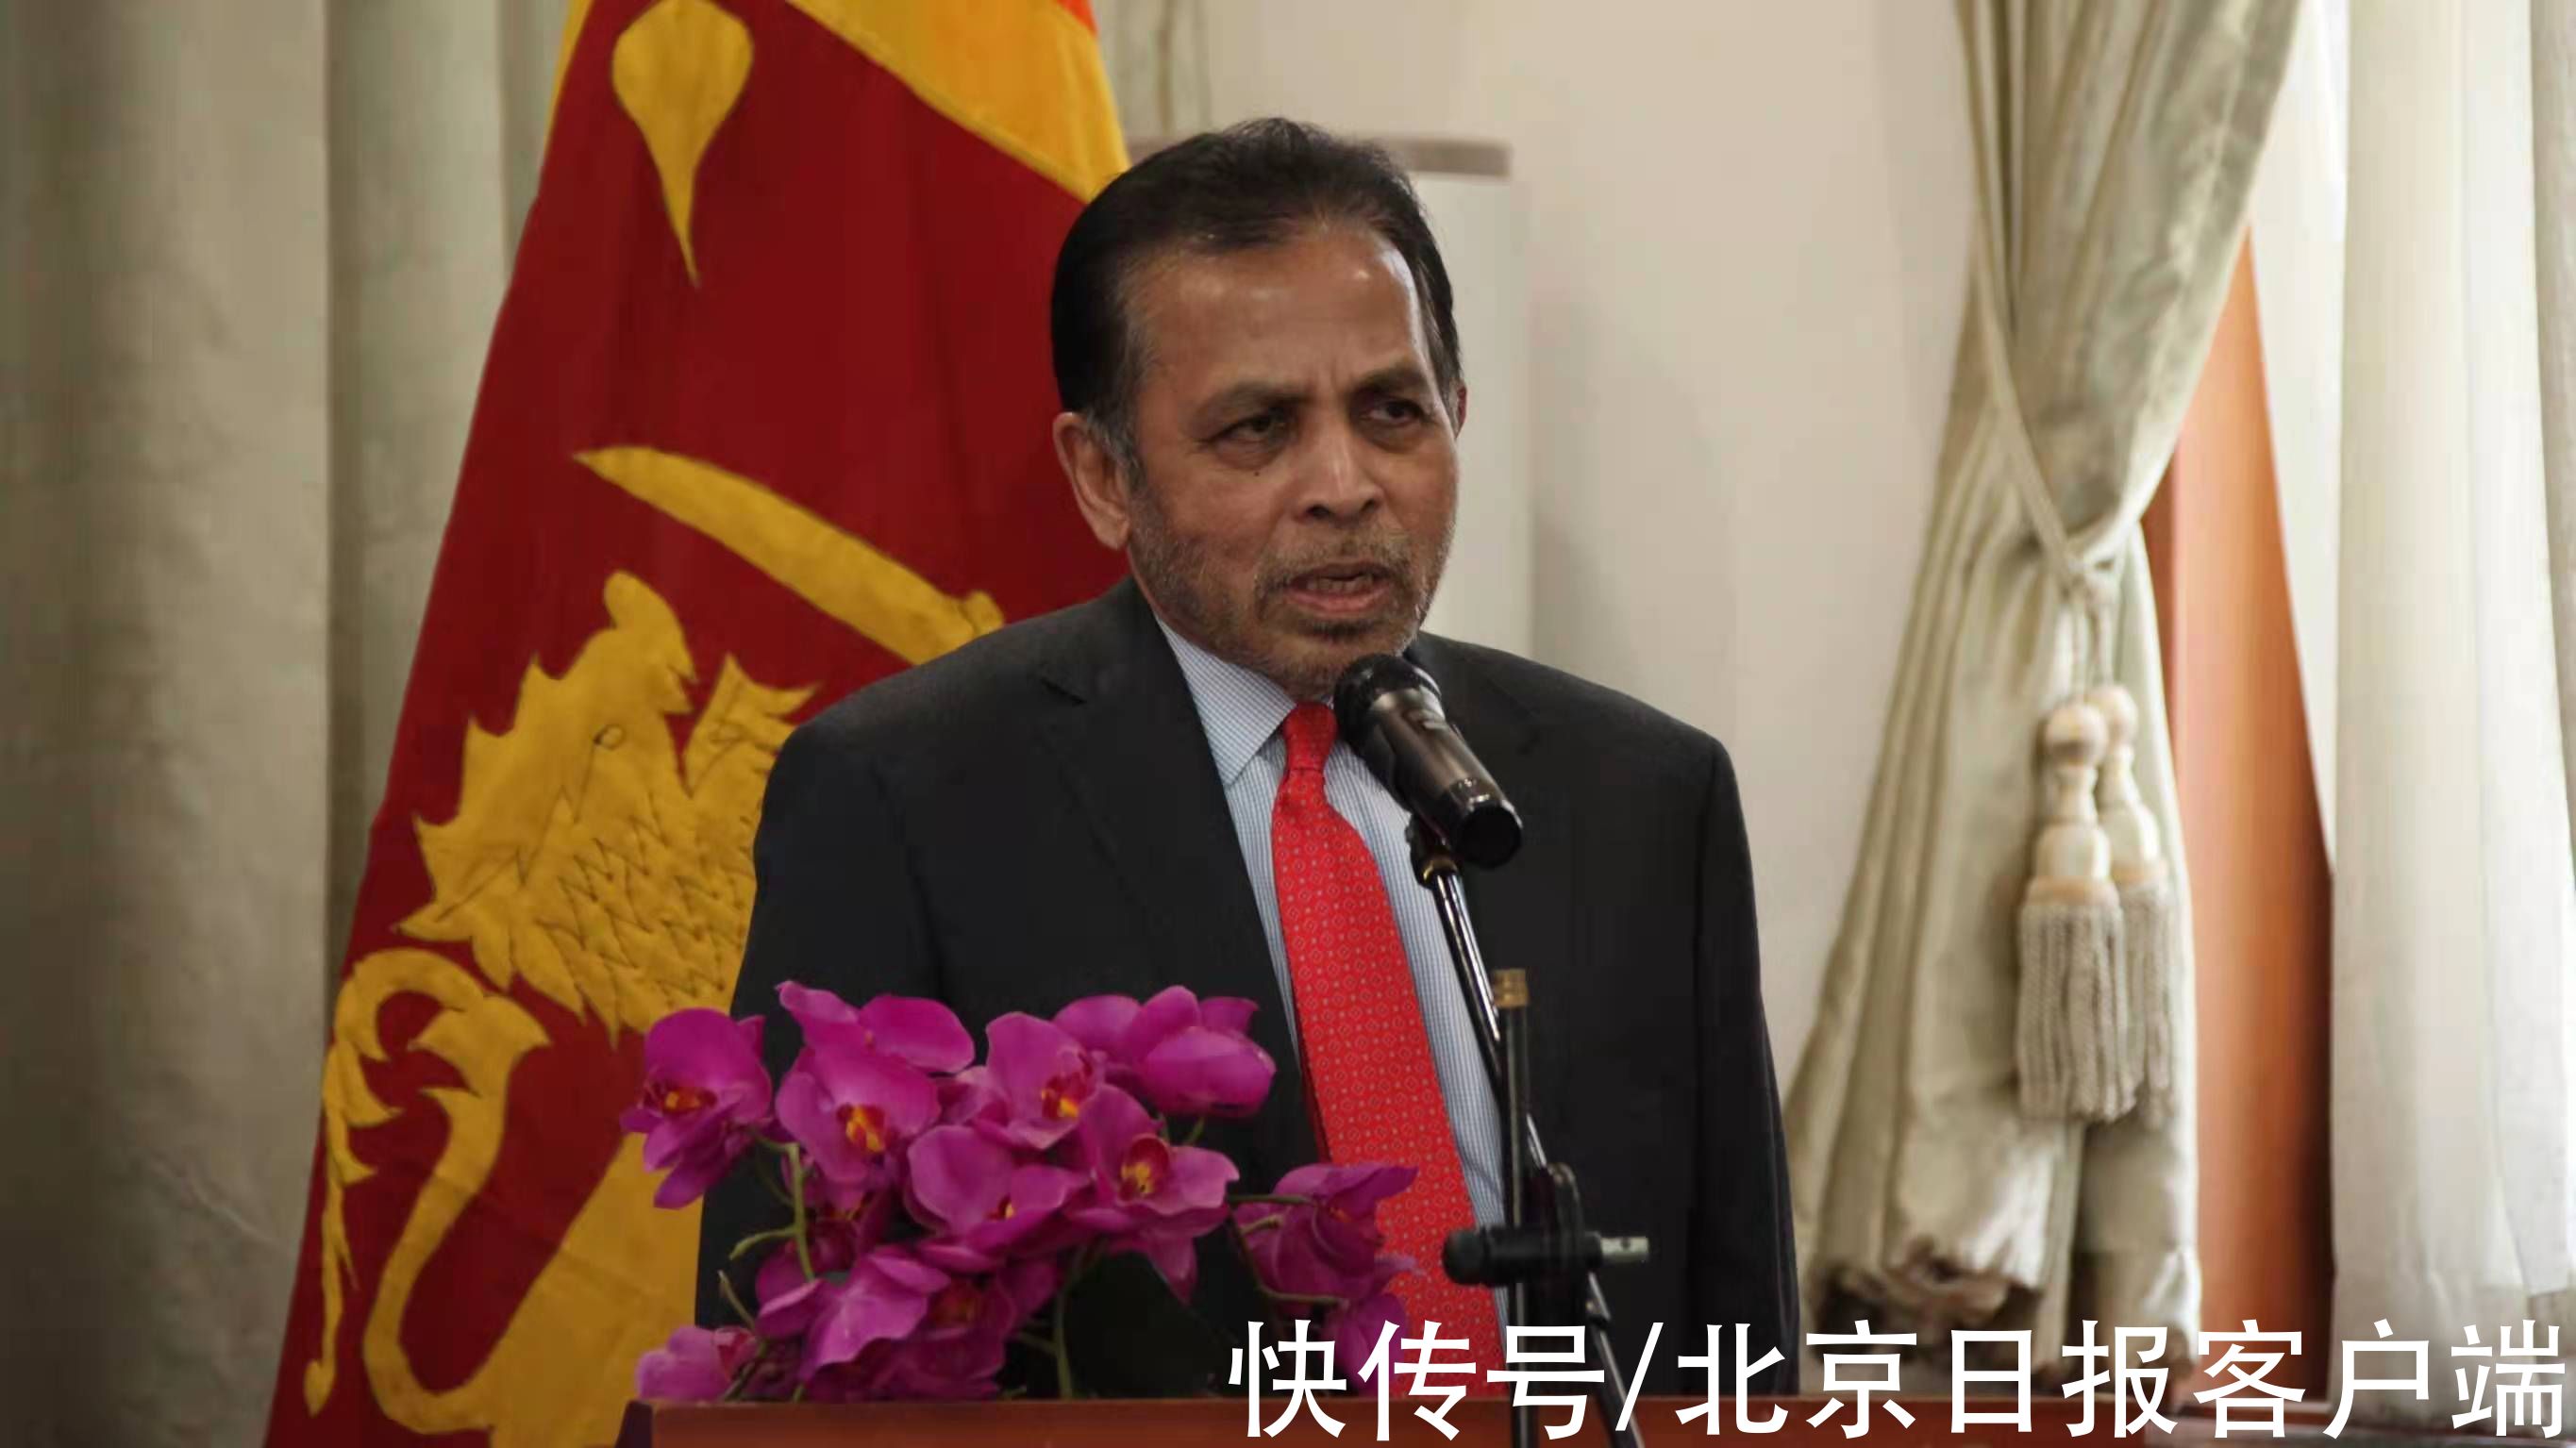 使馆|斯里兰卡驻华使馆开通抖音官方账号，将推广斯里兰卡旅游业